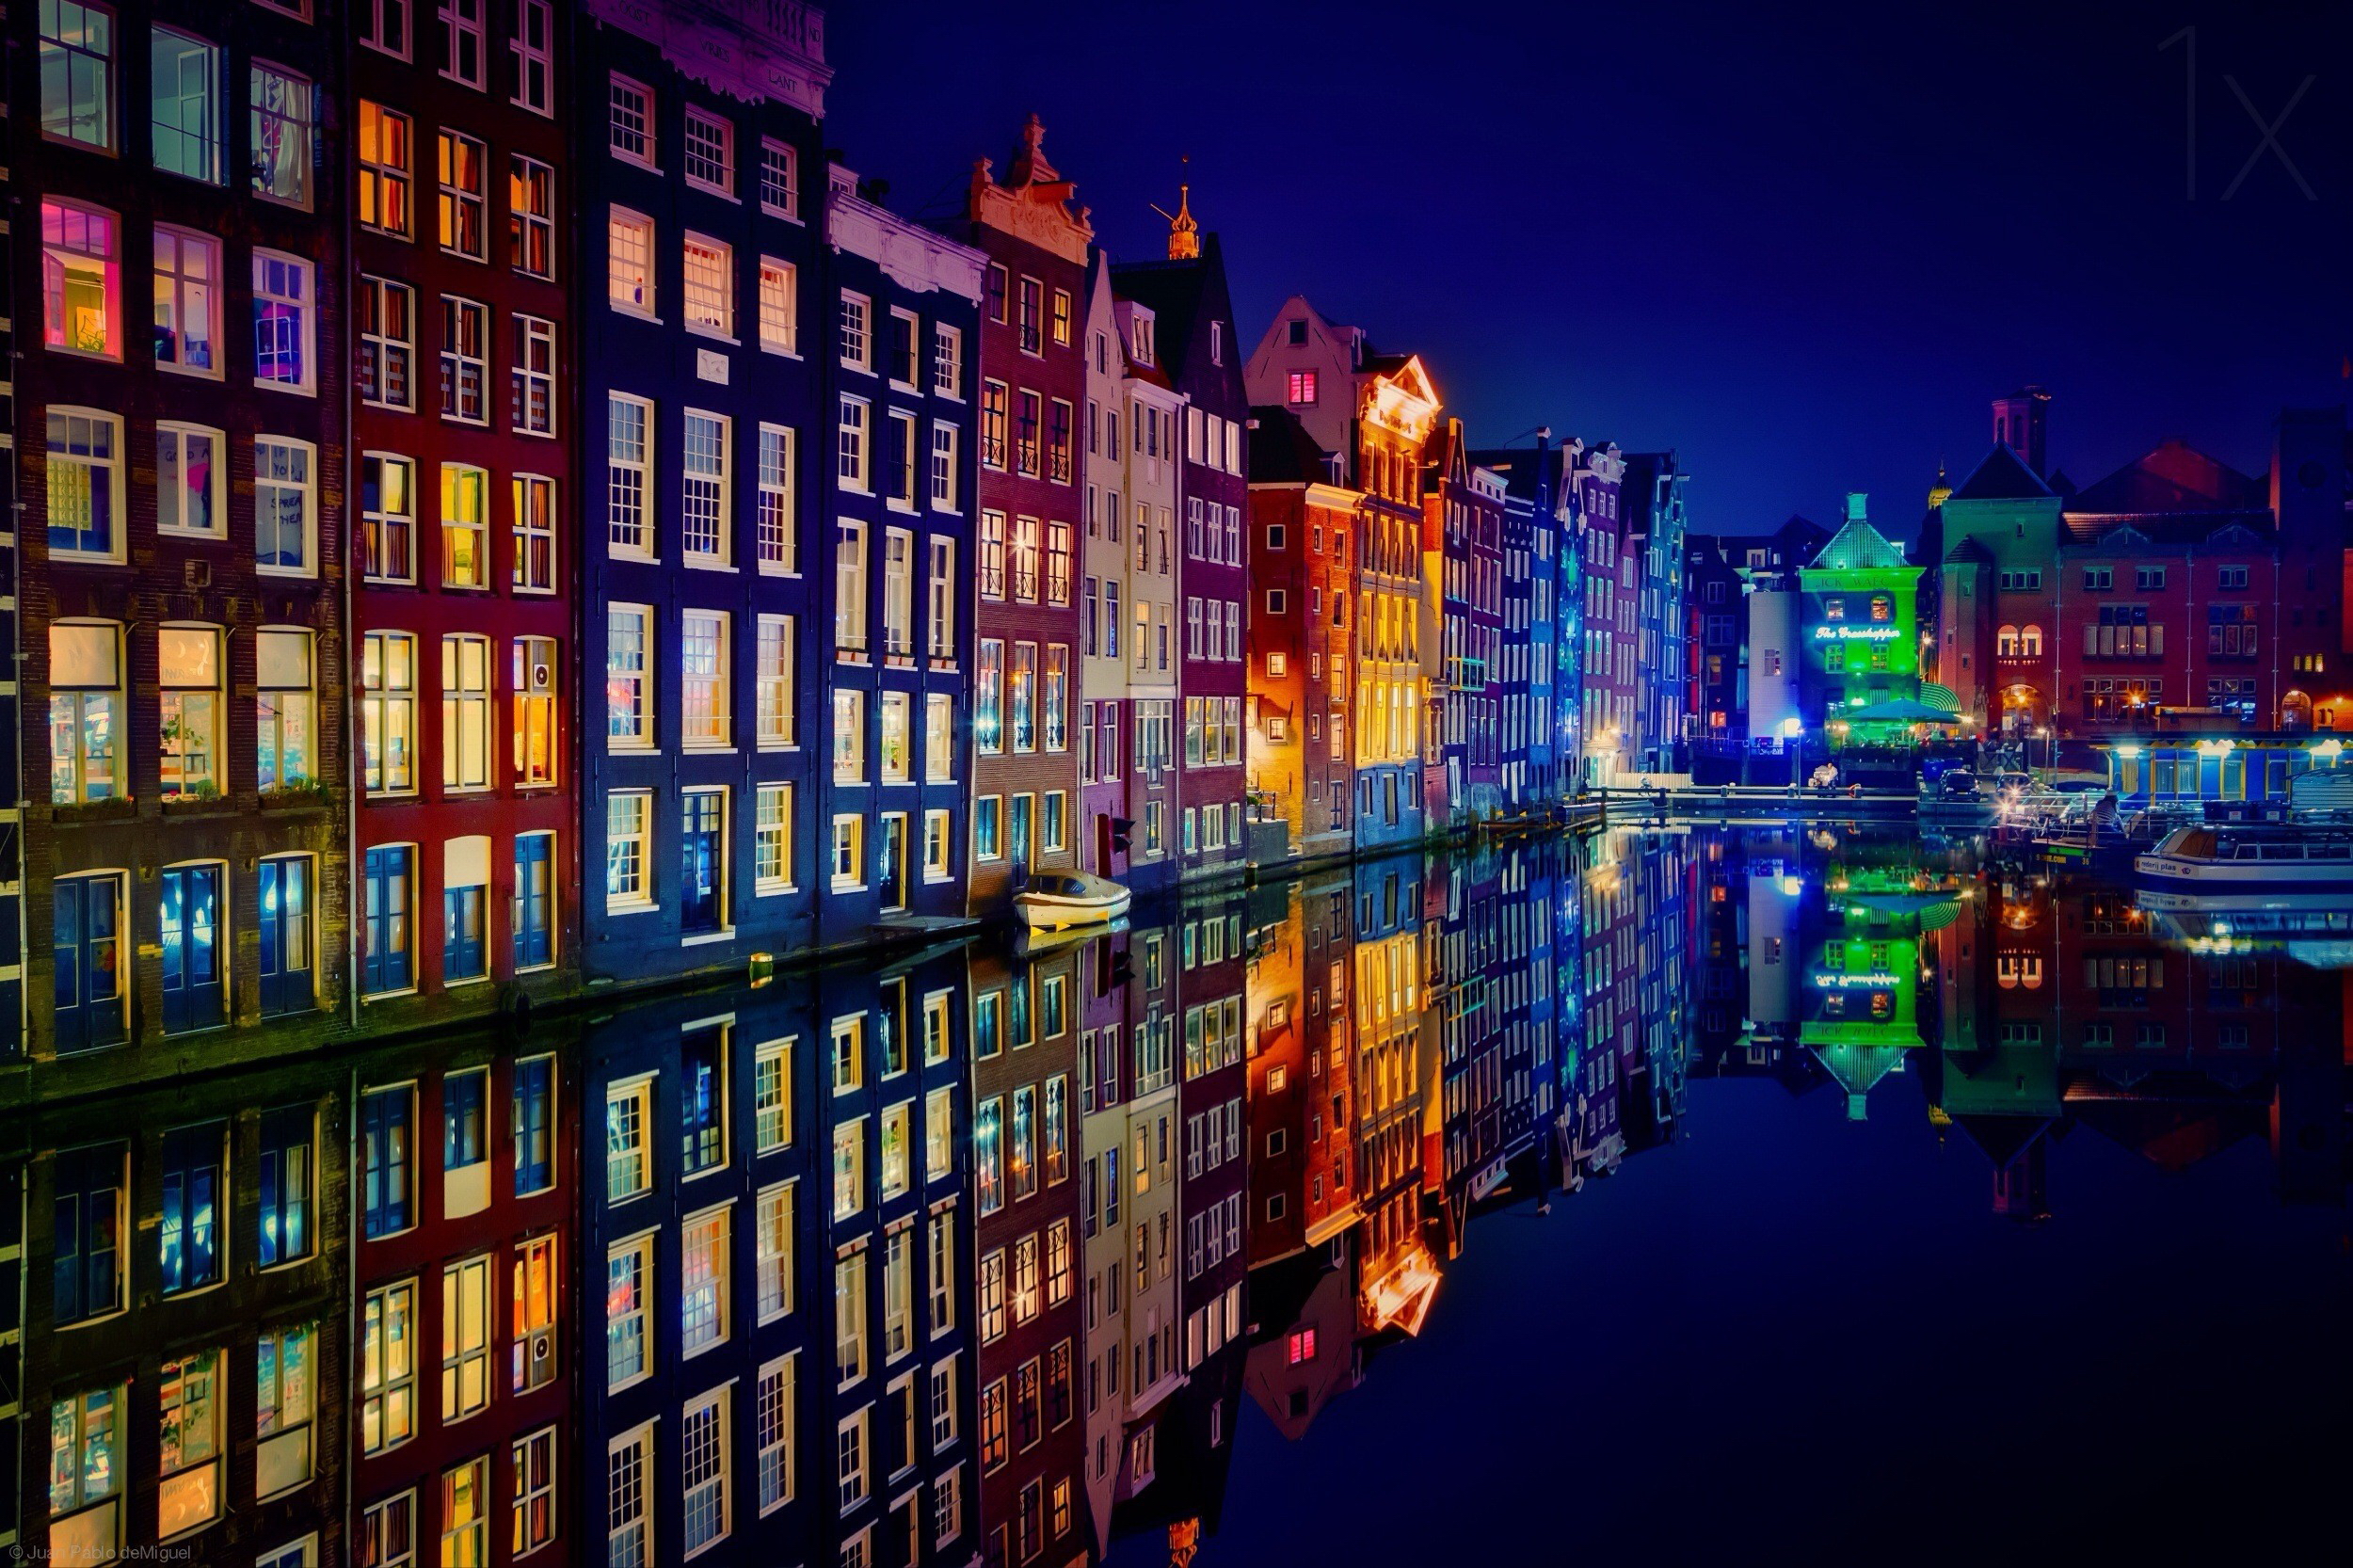 Amsterdam at Night by Juan Pablo De Miguel